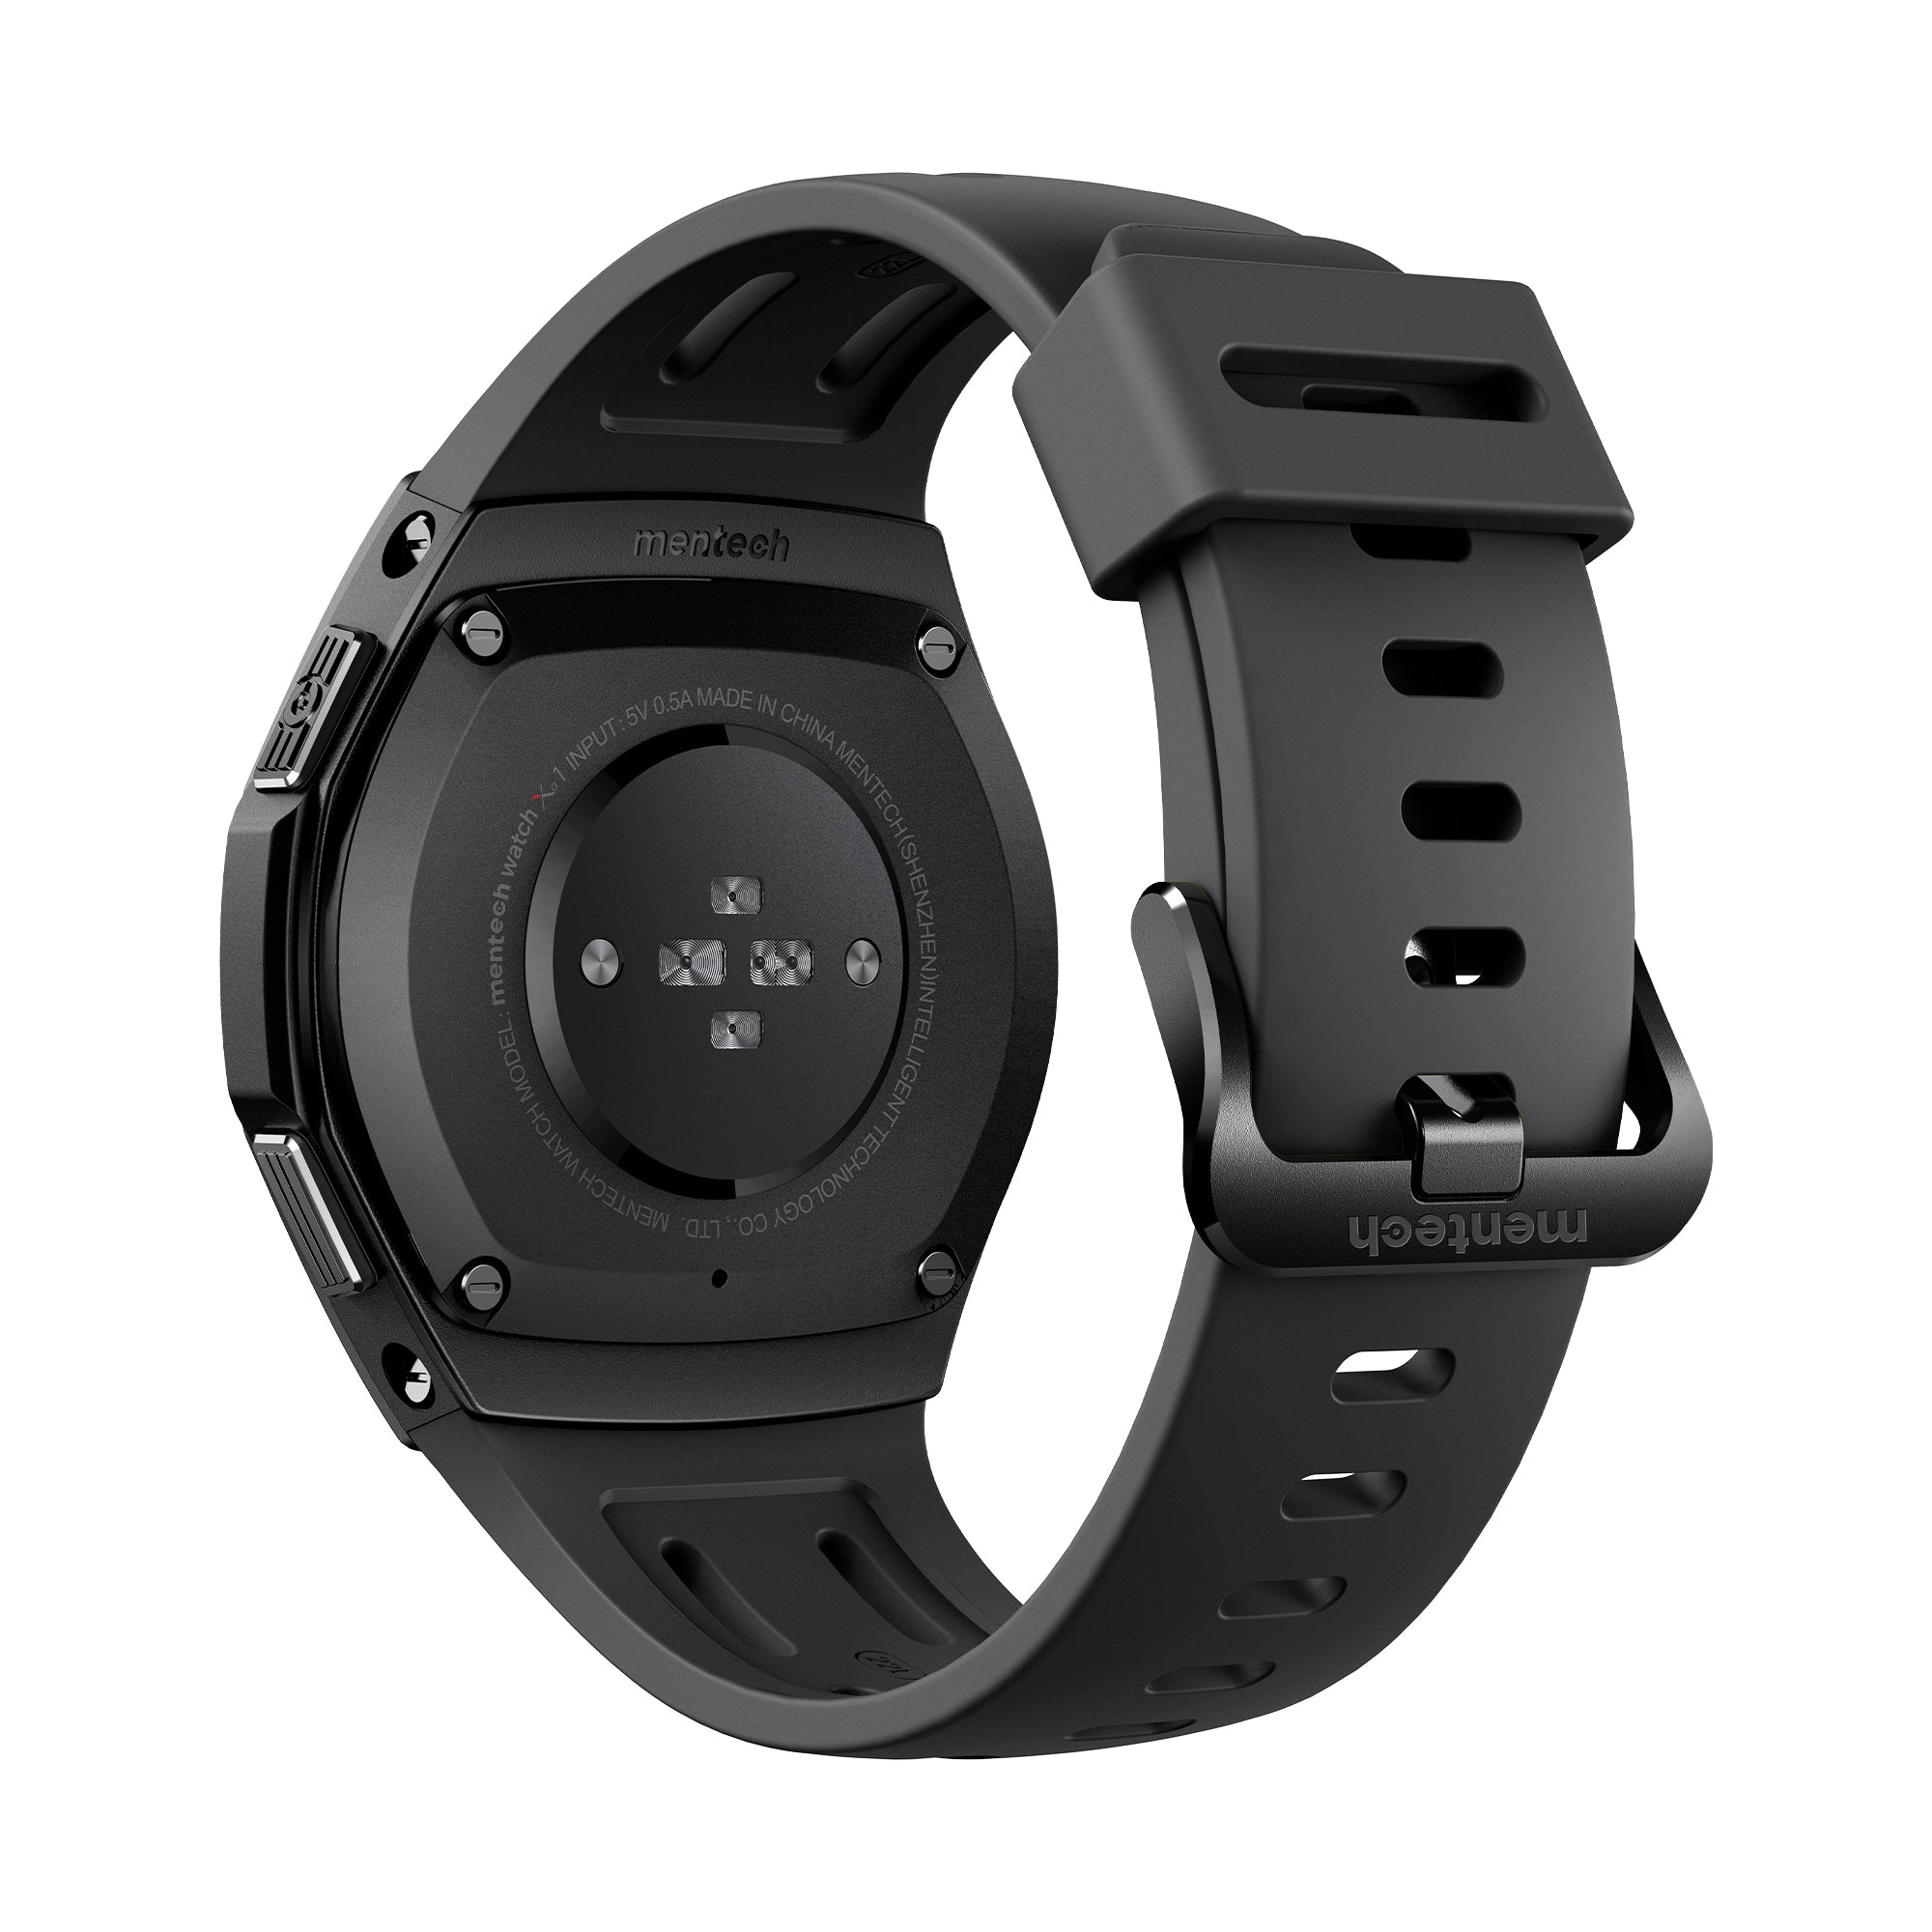 Mentech Xe1 Smartwatch